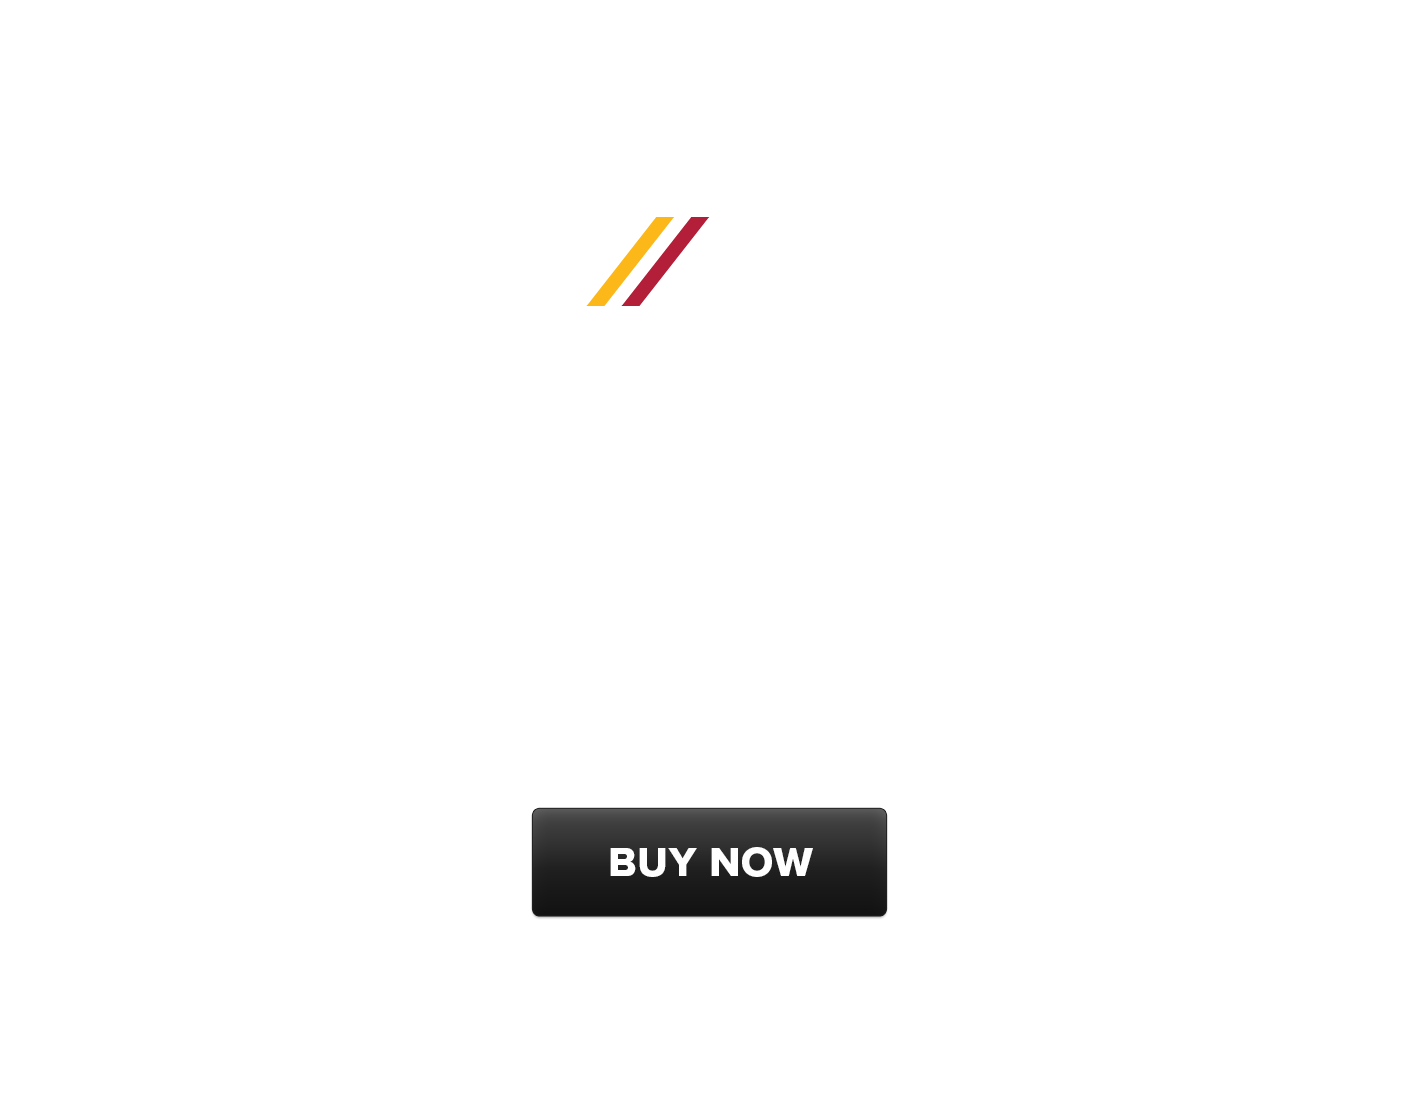 //42 Juice Goose